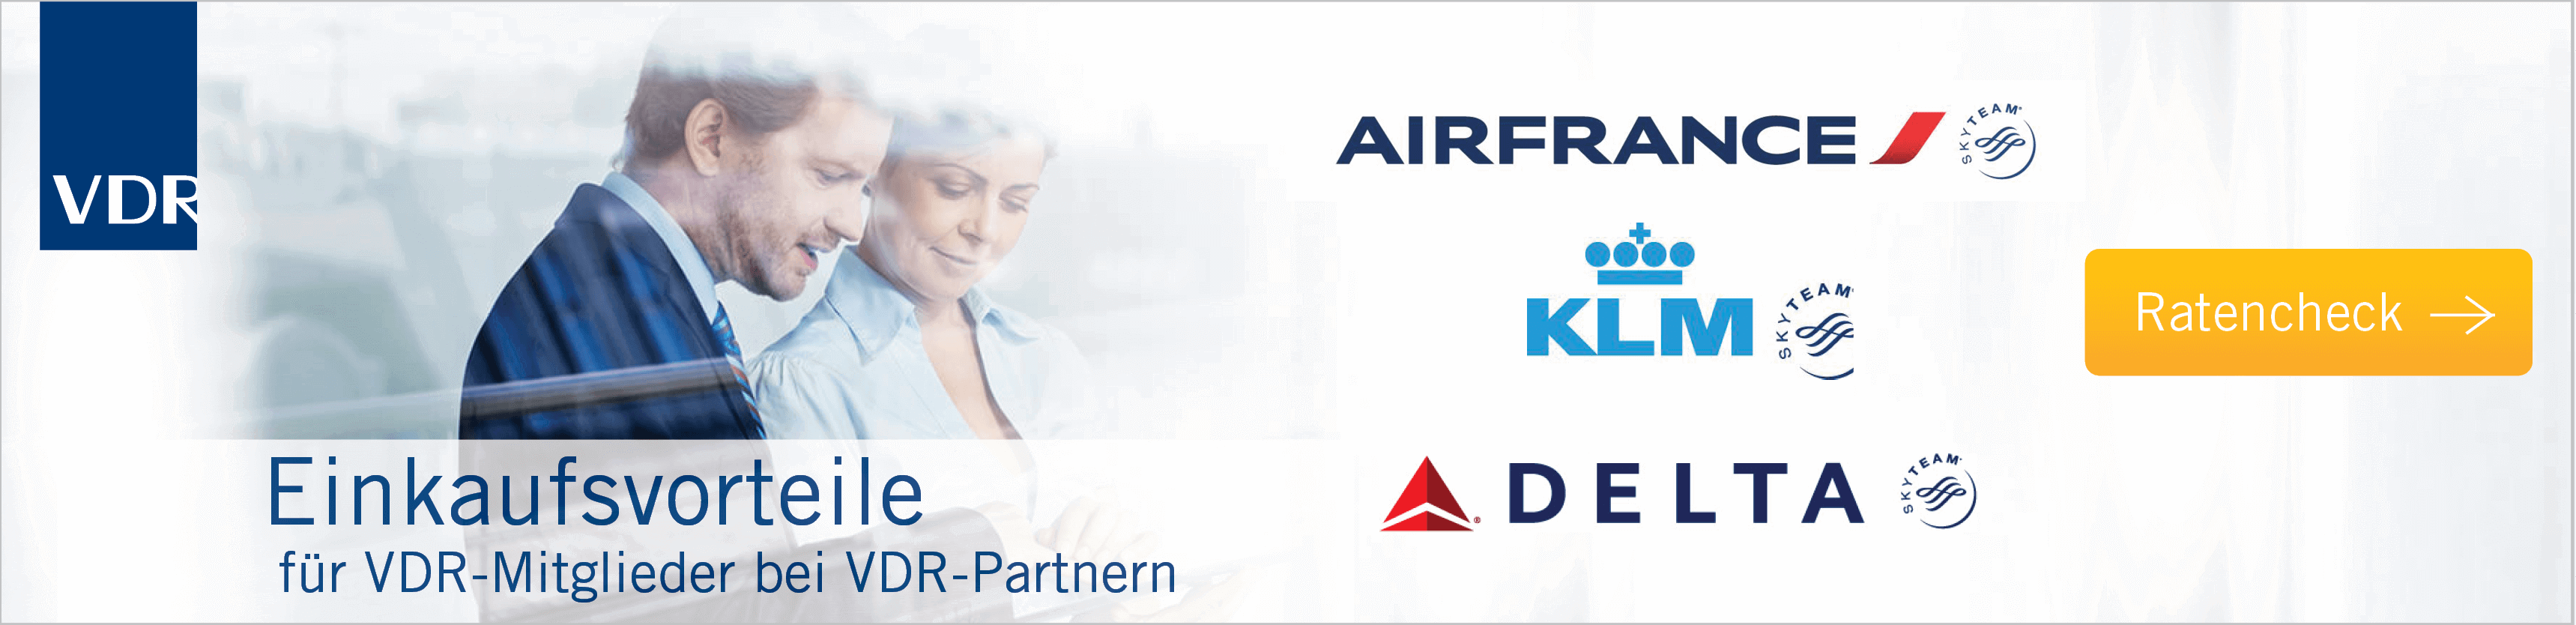 AirFrance KLM Delta | VDR-Einkaufsvorteile V-KON